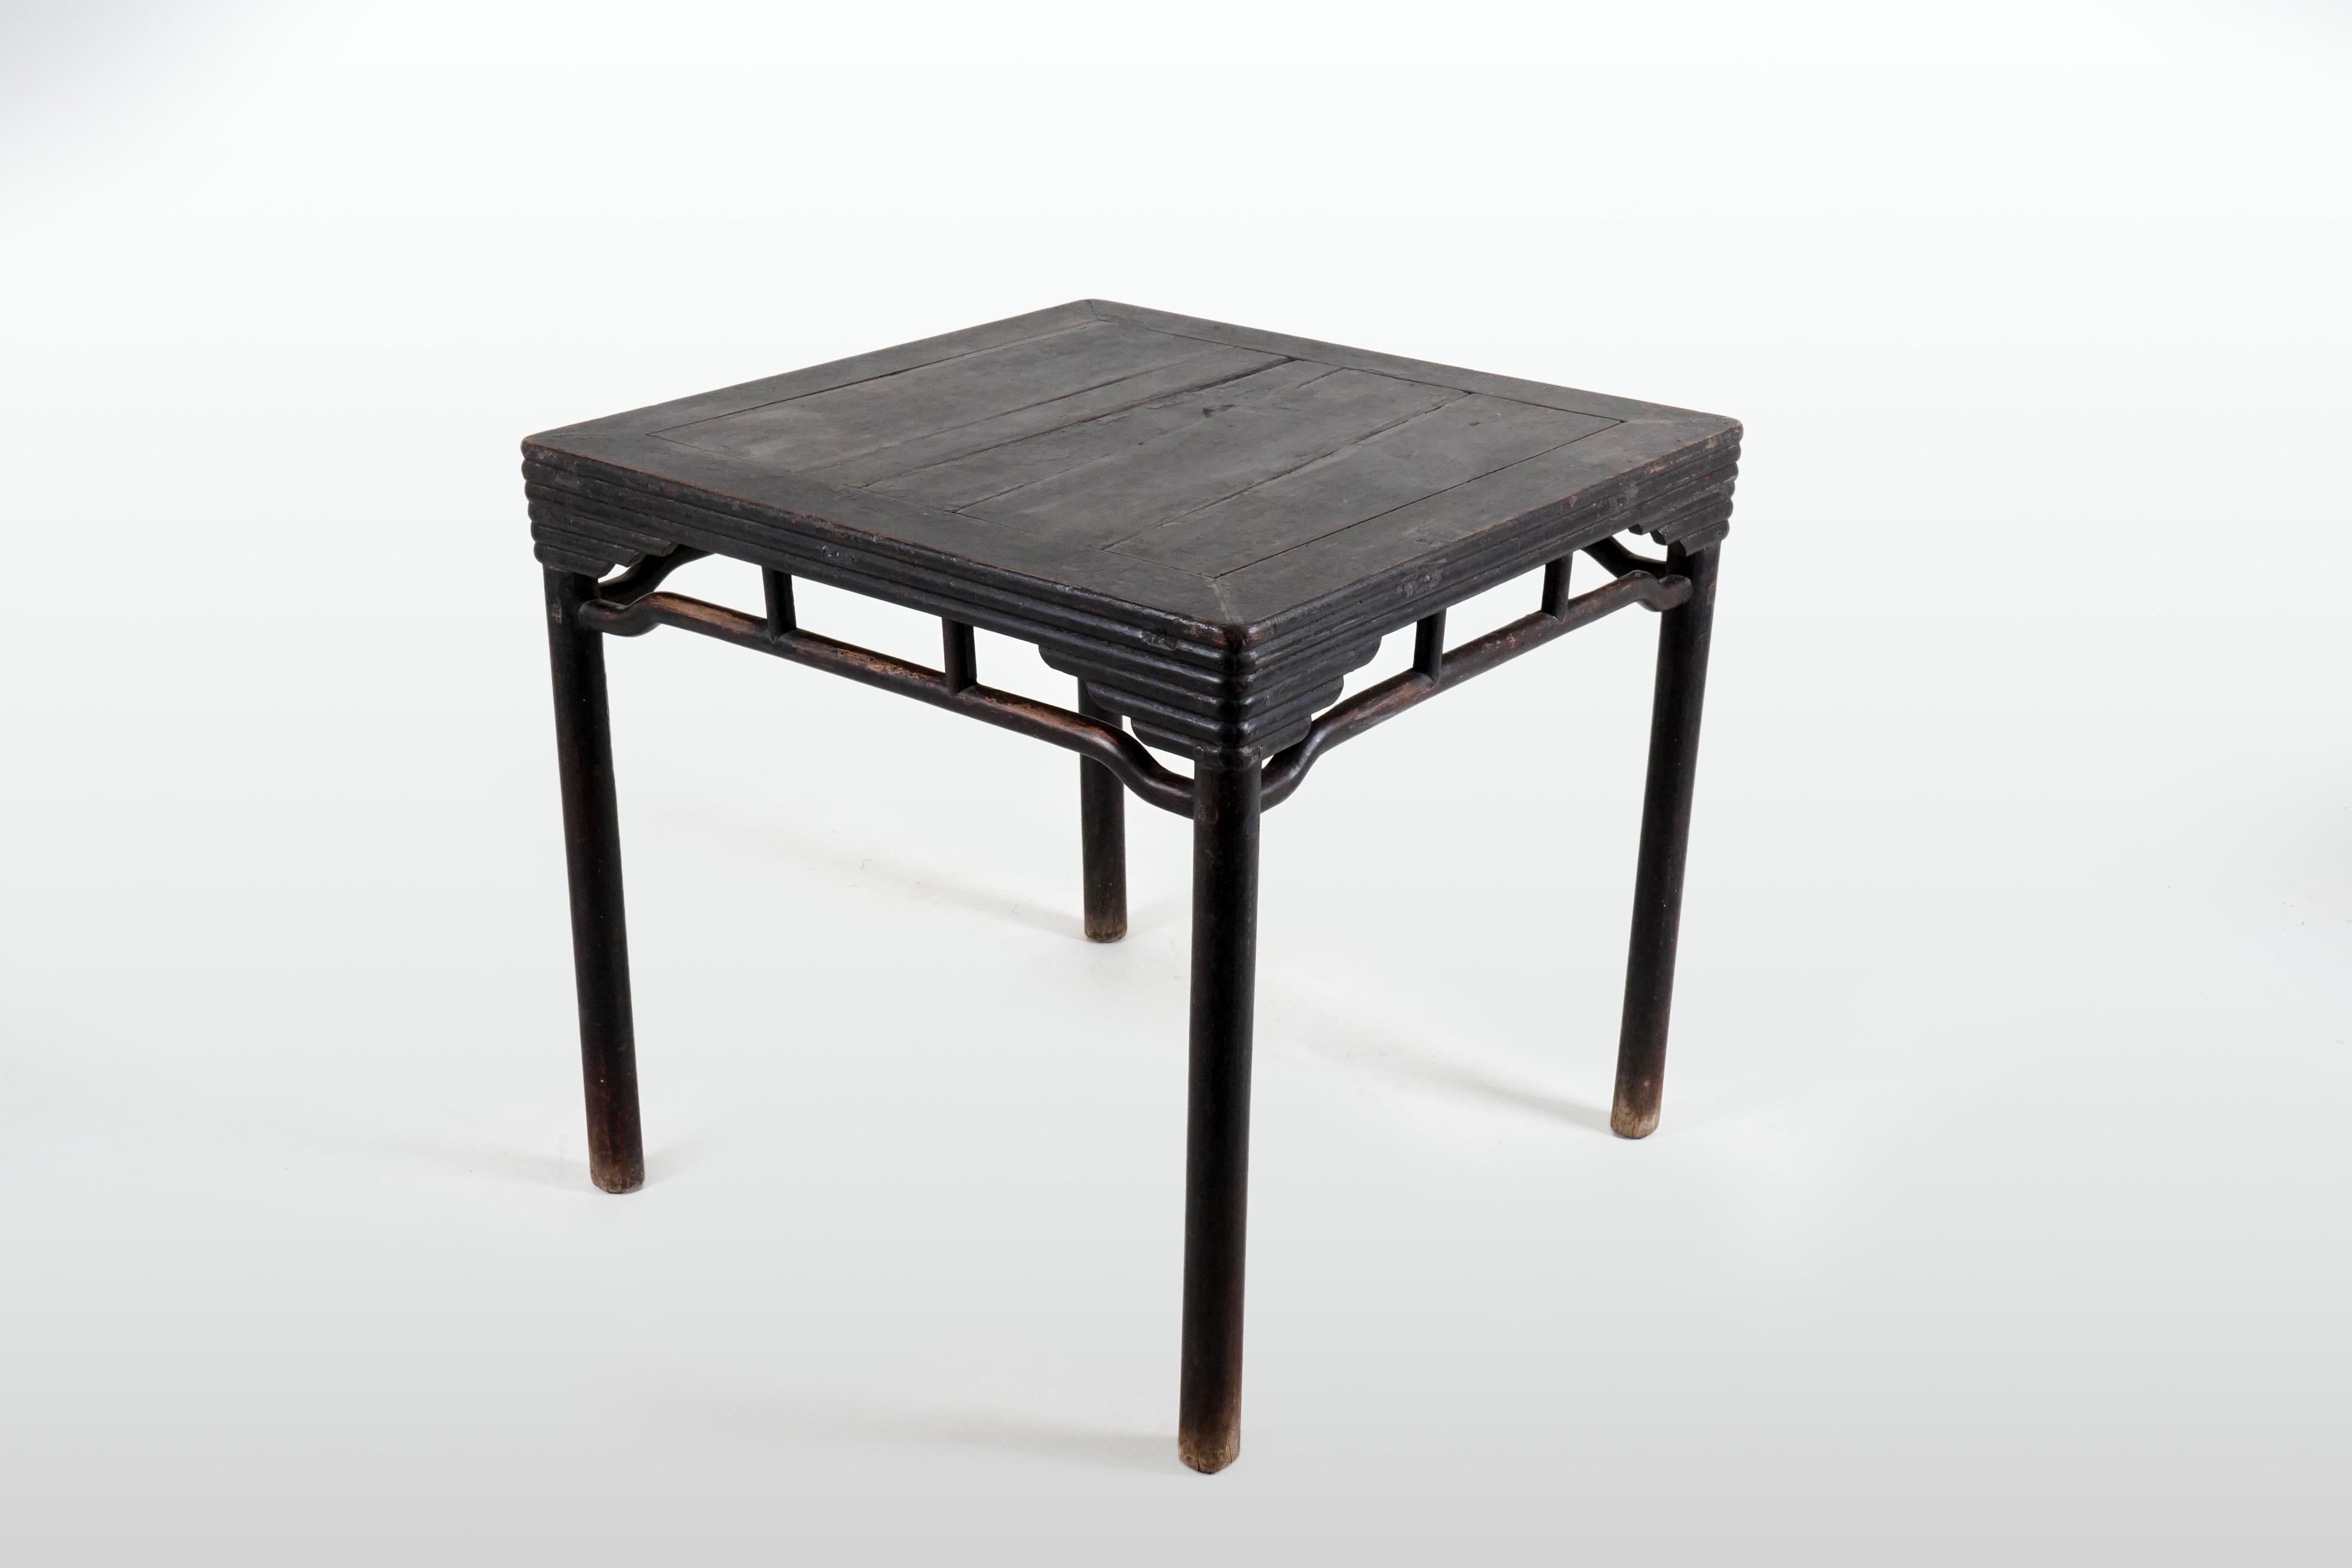 Ein Spieltisch aus dem 19. Jahrhundert mit Buckelstreckern, Säulenbeinen und gebündelten Querstreben mit Bambusmotiv. Dieser robuste Tisch wurde im 19. Jahrhundert in China während der Qing-Dynastie hergestellt und verfügt über eine quadratische,